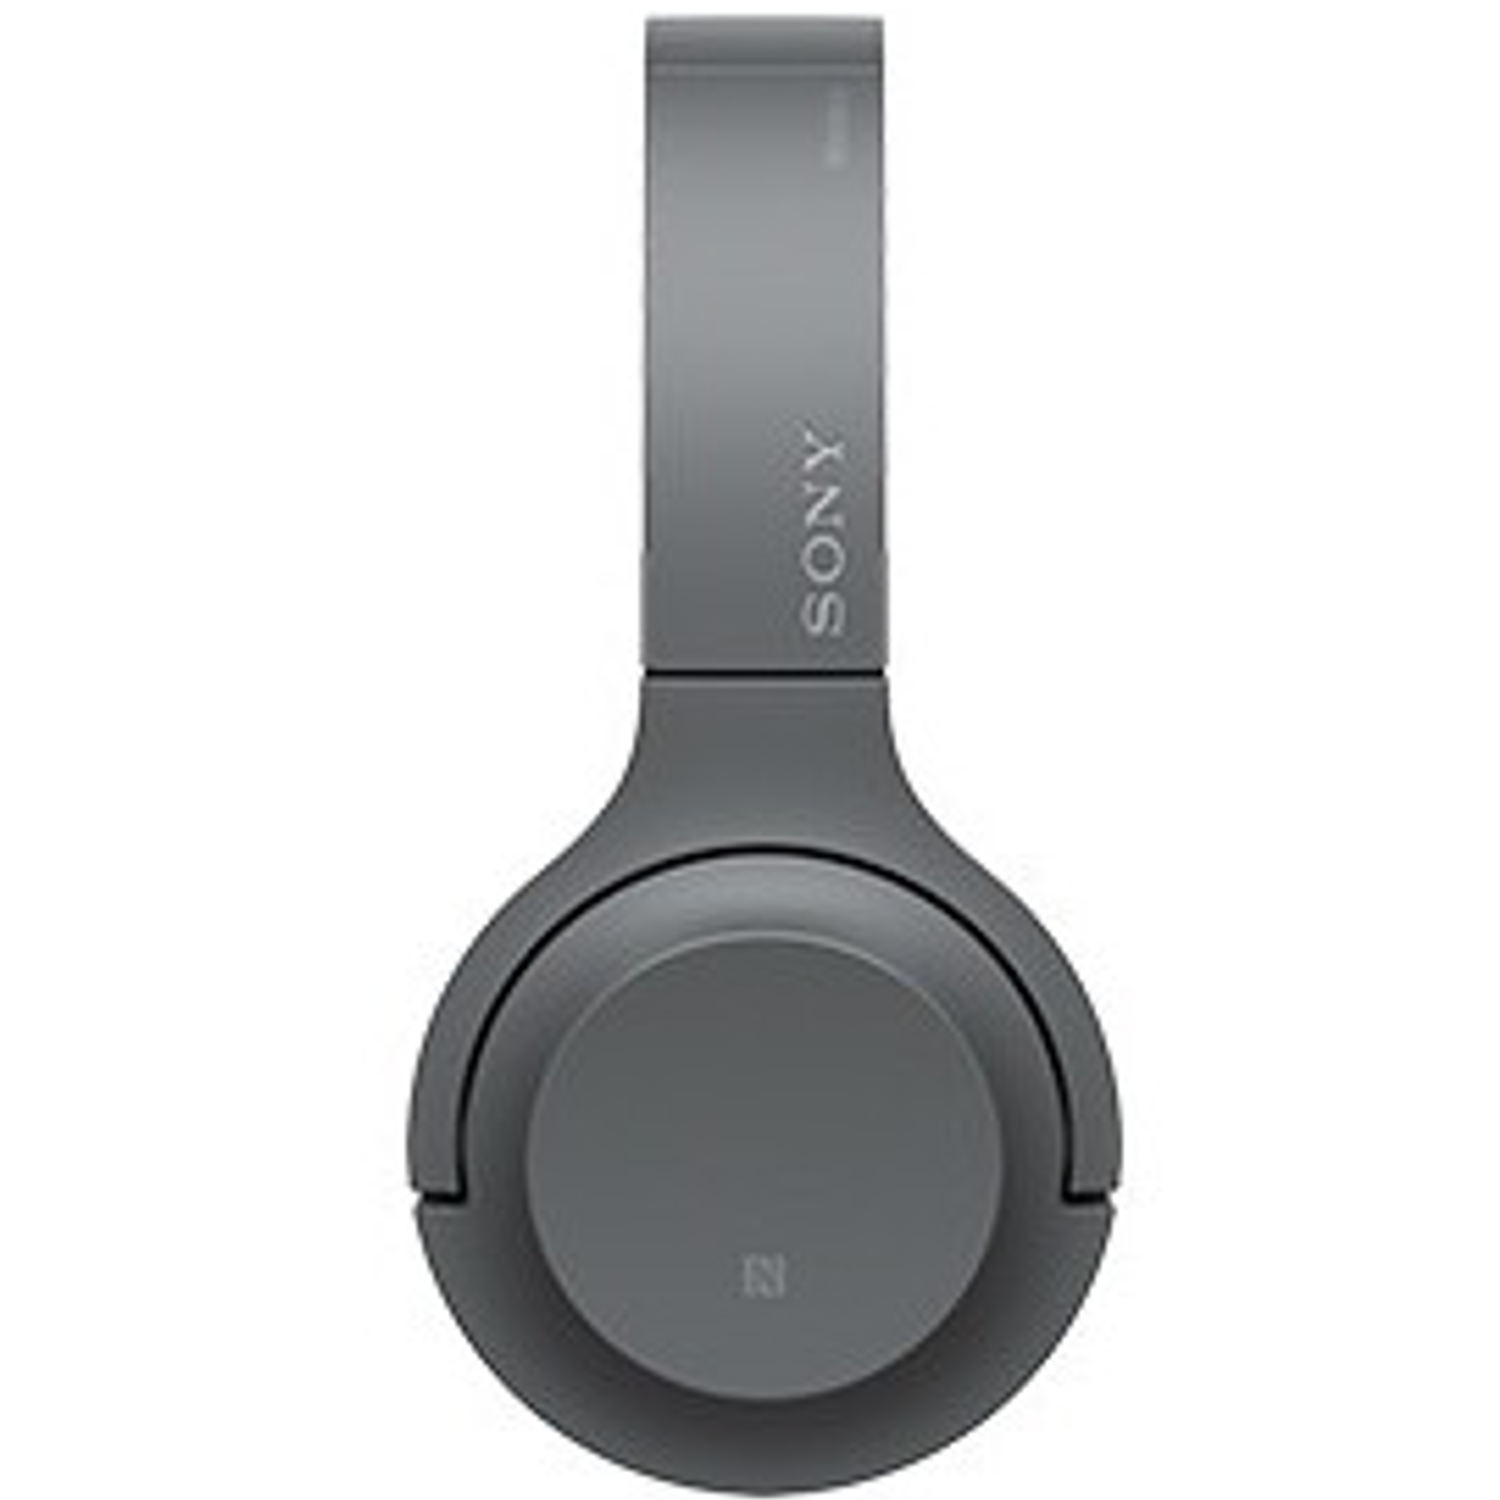 Sony Wireless Headphones - 2